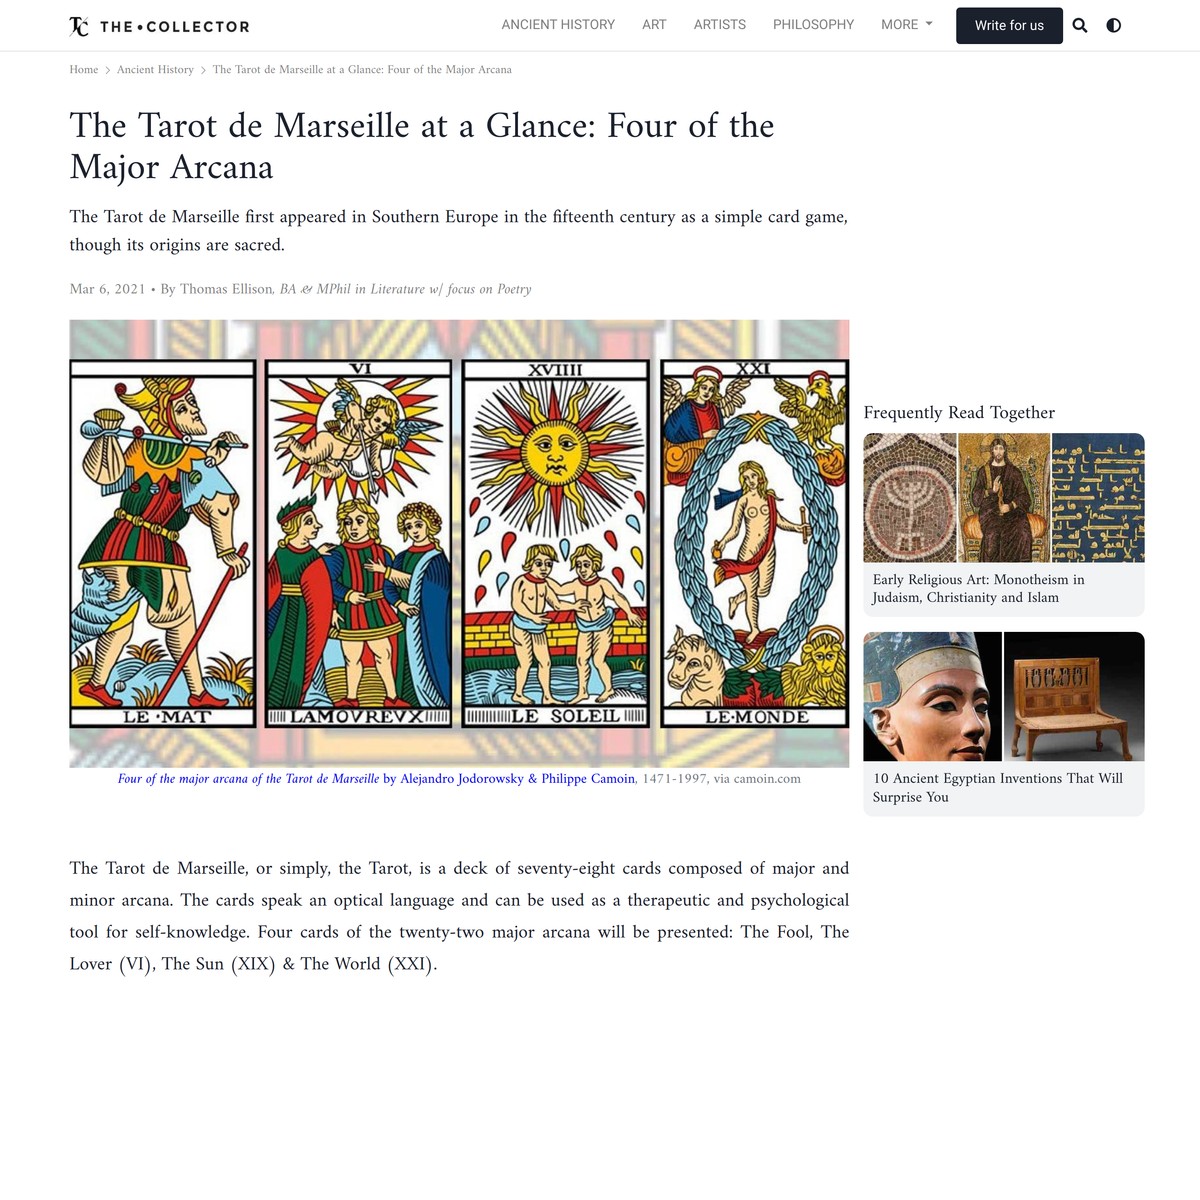 The Tarot de Marseille at a Glance: Four of the Major Arcana